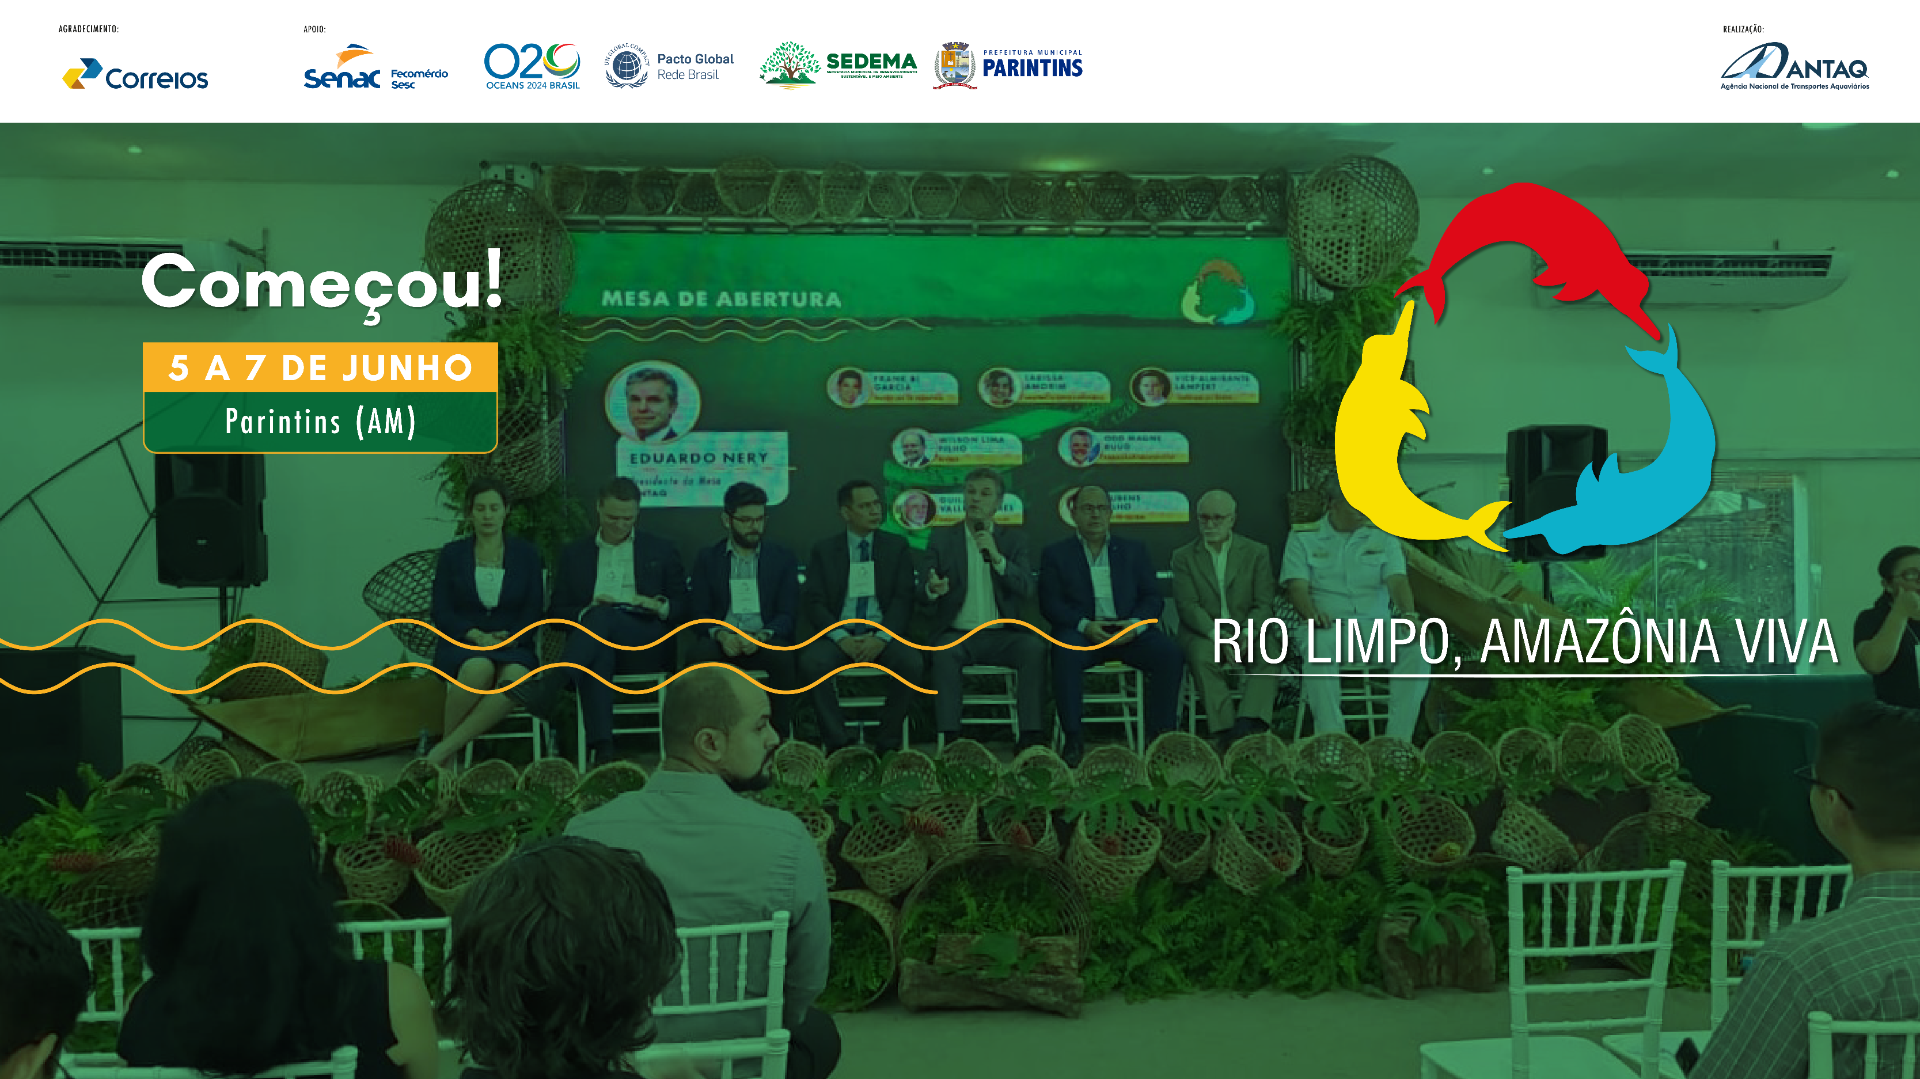 Seminário Executivo do segundo dia do evento "Rio Limpo, Amazônia Viva" apresentou três diálogos sobre ESG. Discussões vão subsidiar grupo temático do G20